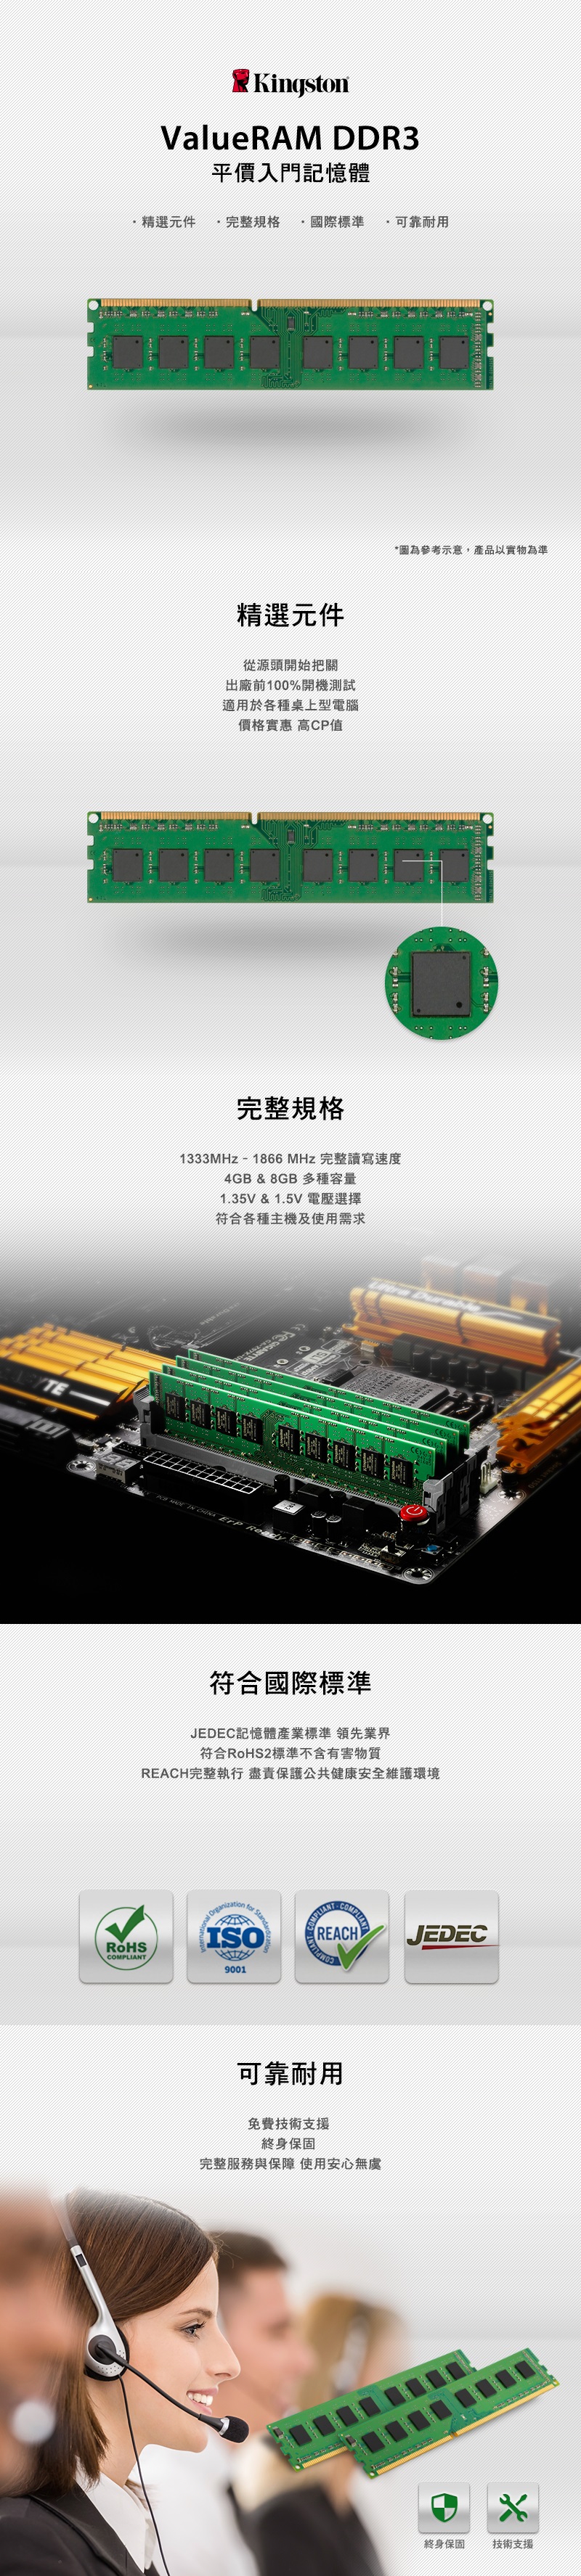 精選元件ValueRAM DDR3平價入門記憶體COMPIANT完整規格 國際標準 可靠耐用Kingston精選元件從源頭開始把關出廠前100%開機測試適用於各種桌上型電腦價格實惠 高CP值完整規格   CHINA 1333MHz  1866 MHz 完整讀寫速度4GB & 8GB 多種容量1.35V & 1.5V 電壓選擇符合各種主機及使用需求  for 9001符合國際標準JEDEC記憶體產業標準 領先業界符合RoHS2標準不含有害物質REACH完整執行 盡責保護公共健康安全維護環境REACH可靠耐用L圖為參考示意產品以實物為準 *-免費技術支援終身保固完整服務與保障 使用安心無虞JEDEC終身保固技術支援